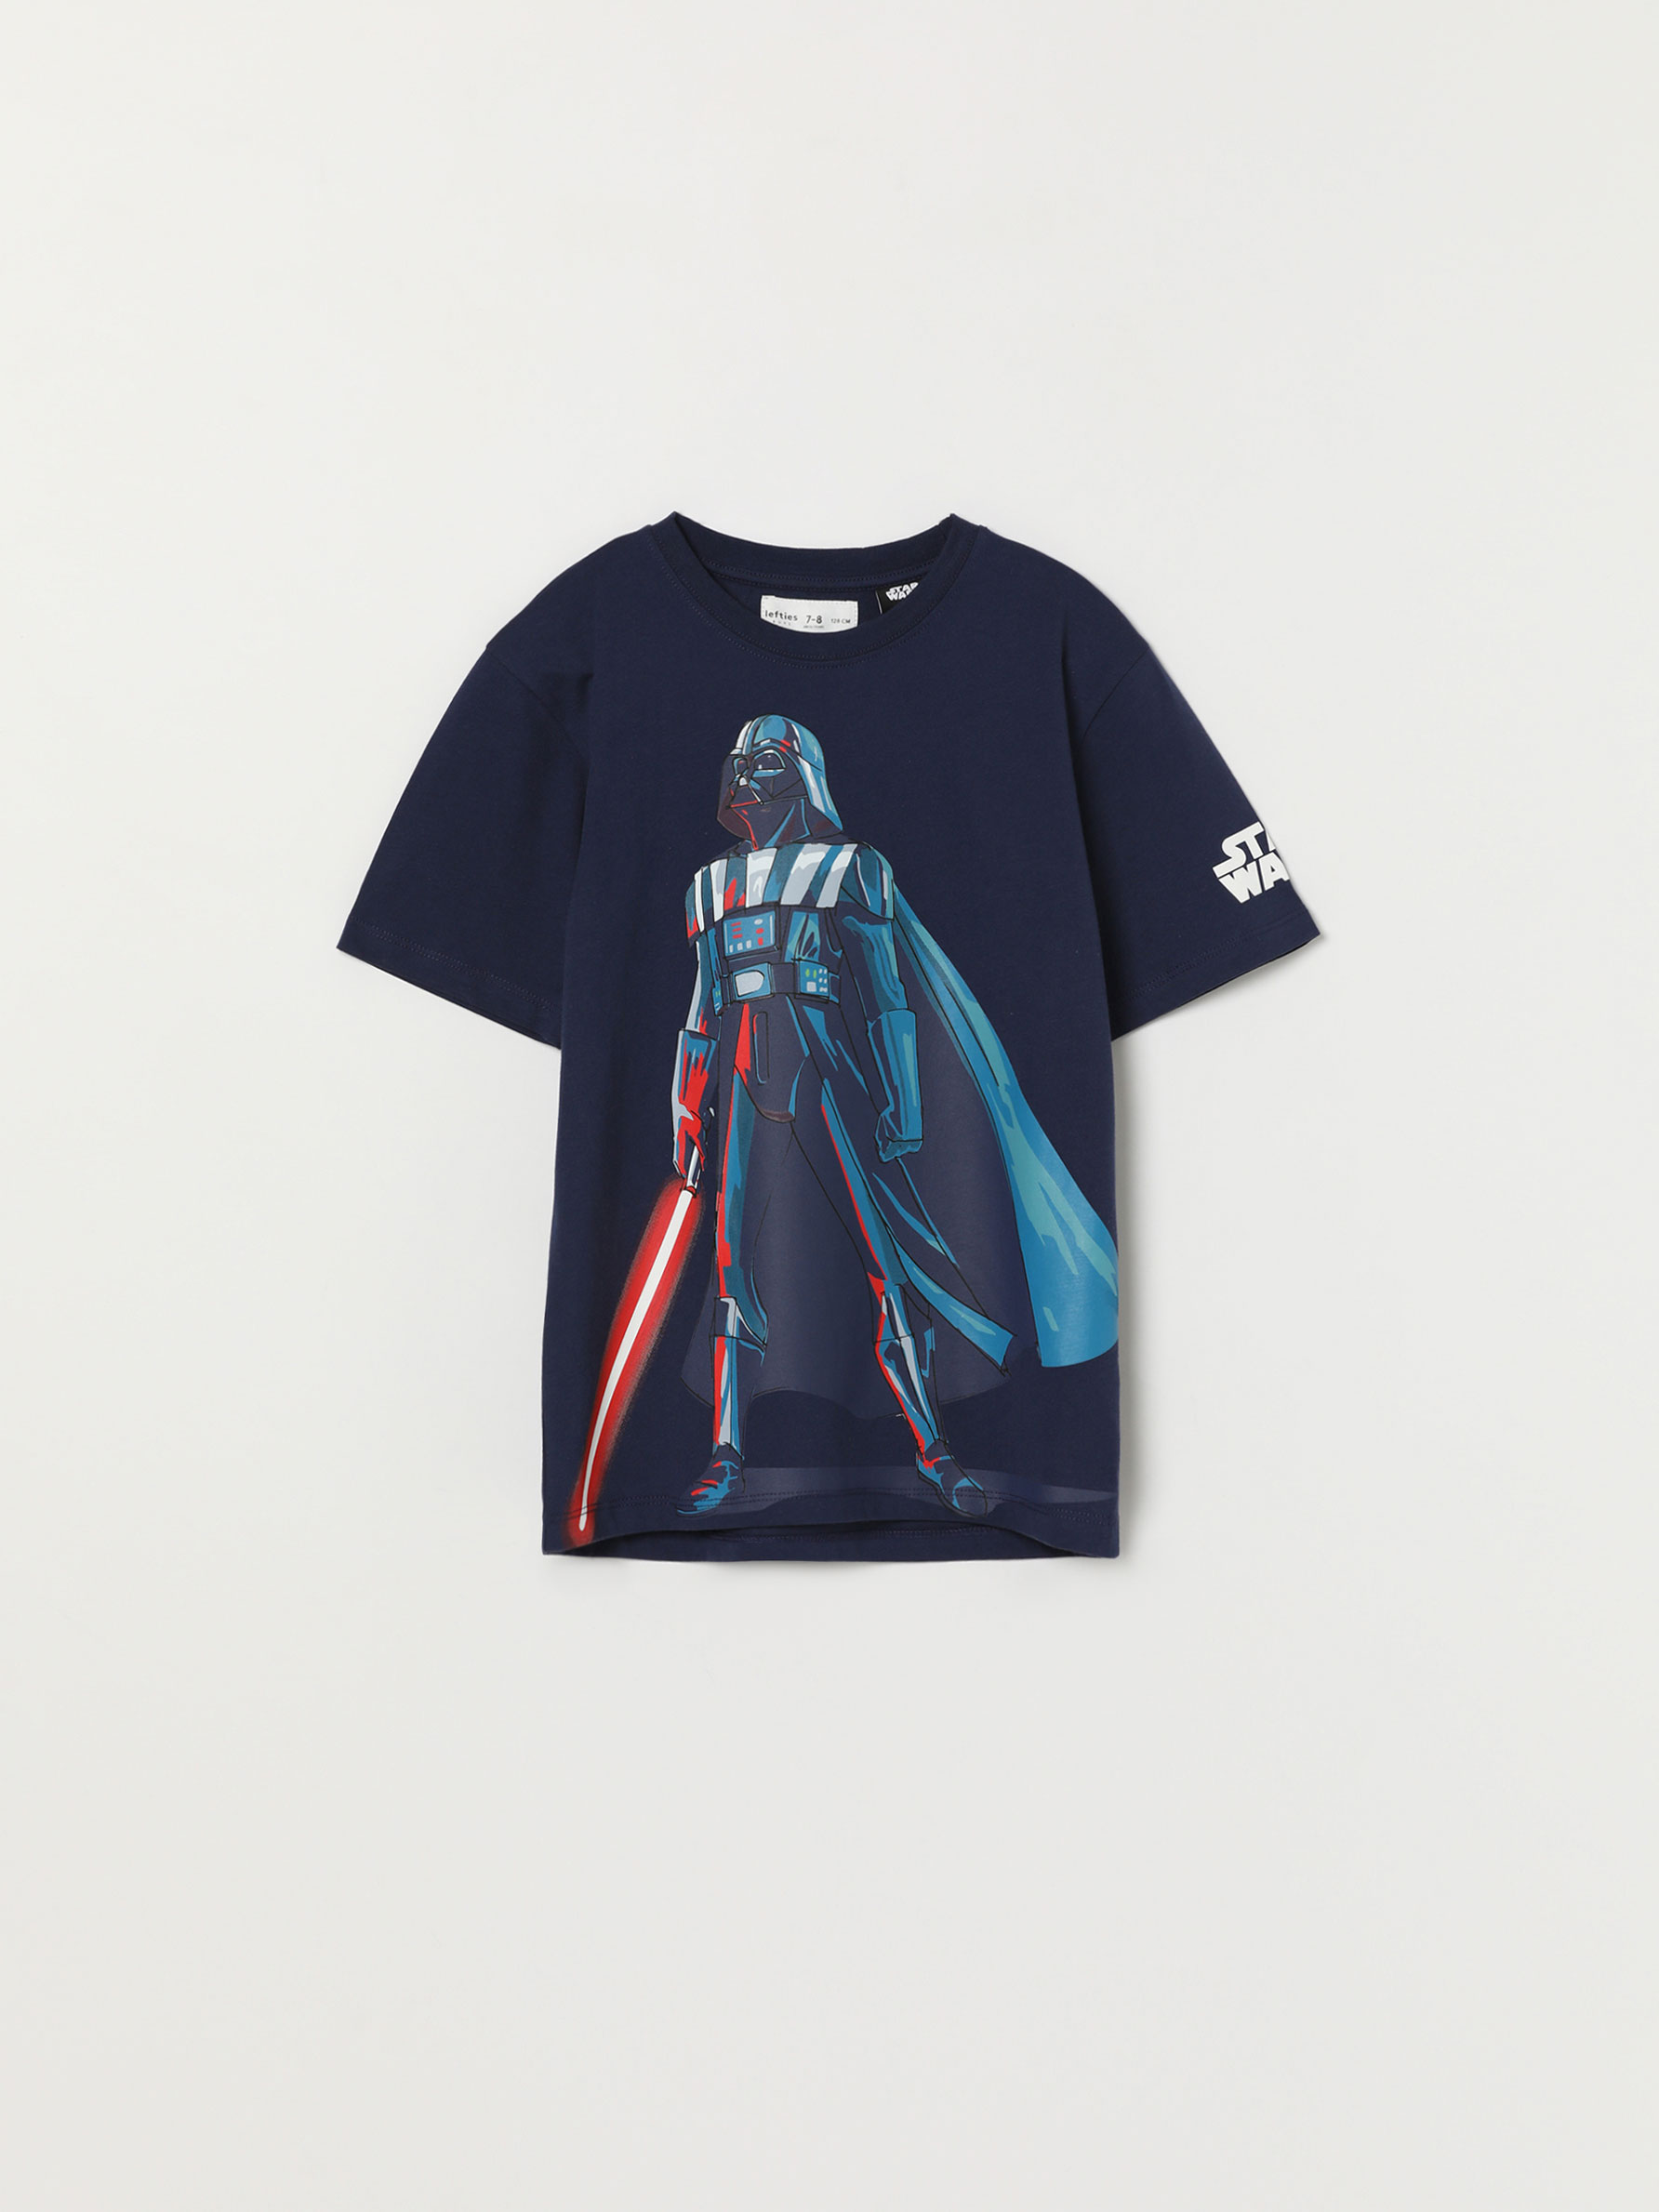 Disney Star Wars Darth Vader Costume Caped T-Shirt and Shorts Set 